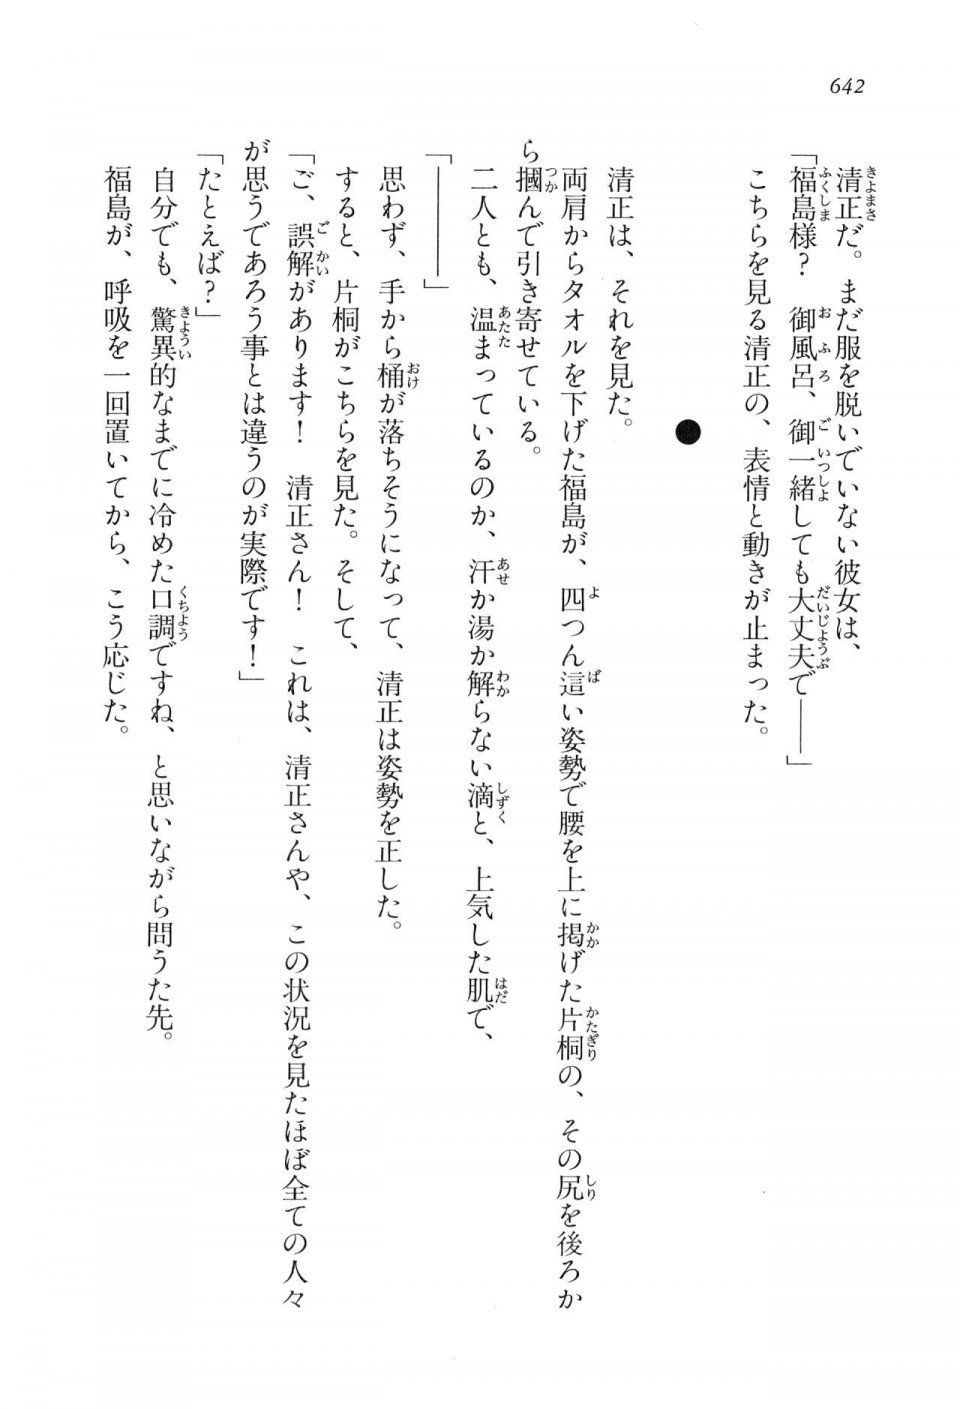 Kyoukai Senjou no Horizon LN Vol 16(7A) - Photo #642